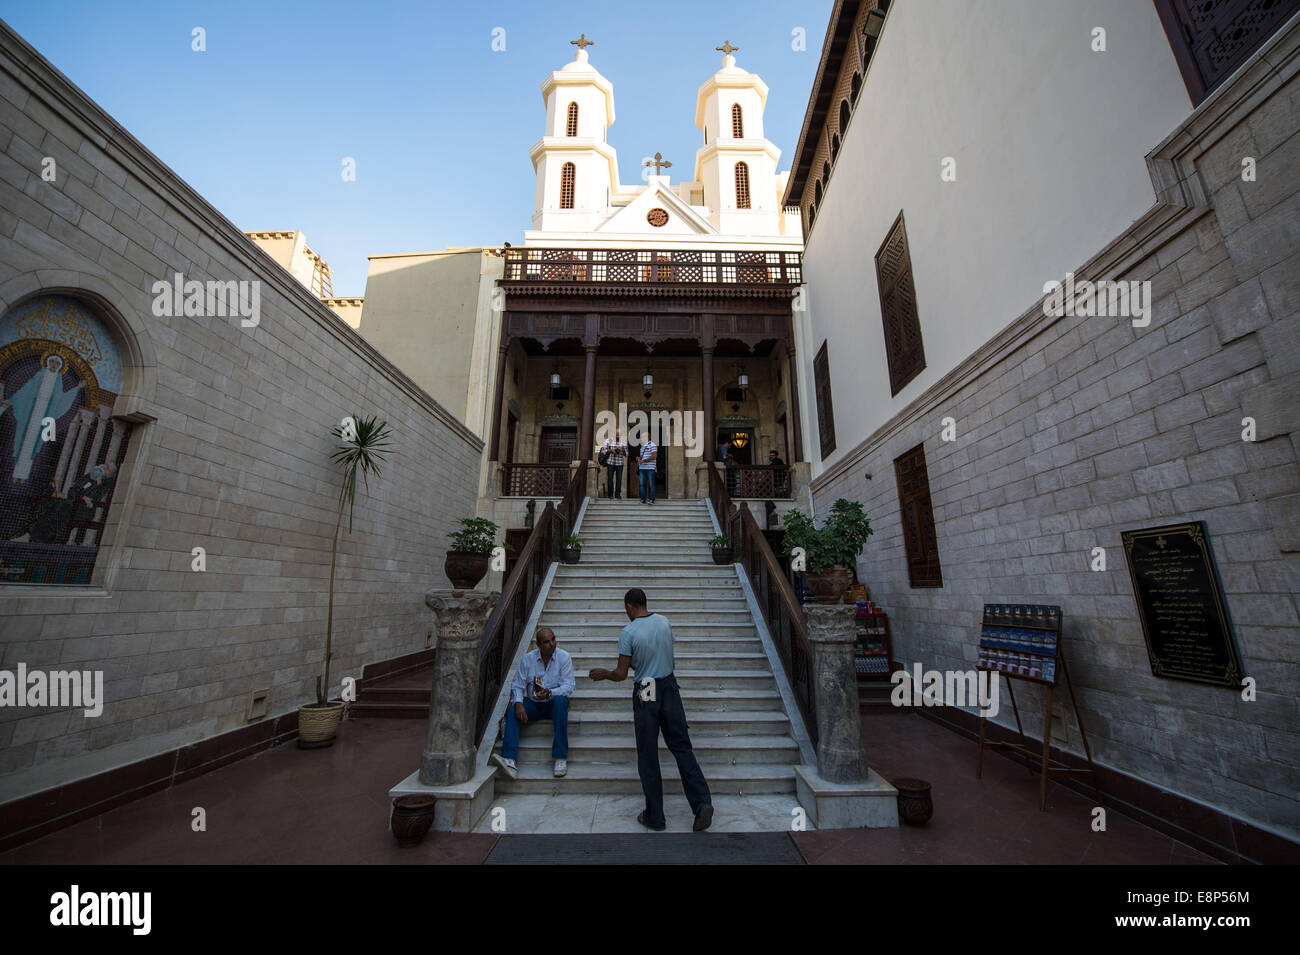 El Cairo, Egipto. 12 Oct, 2014. Los turistas se ve delante de la iglesia copta colgantes en El Cairo, Egipto, 12 de octubre de 2014. La antigua iglesia fue reabierta el 11 de octubre después de 16 años de renovación. Crédito: Pan Chaoyue/Xinhua/Alamy Live News Foto de stock